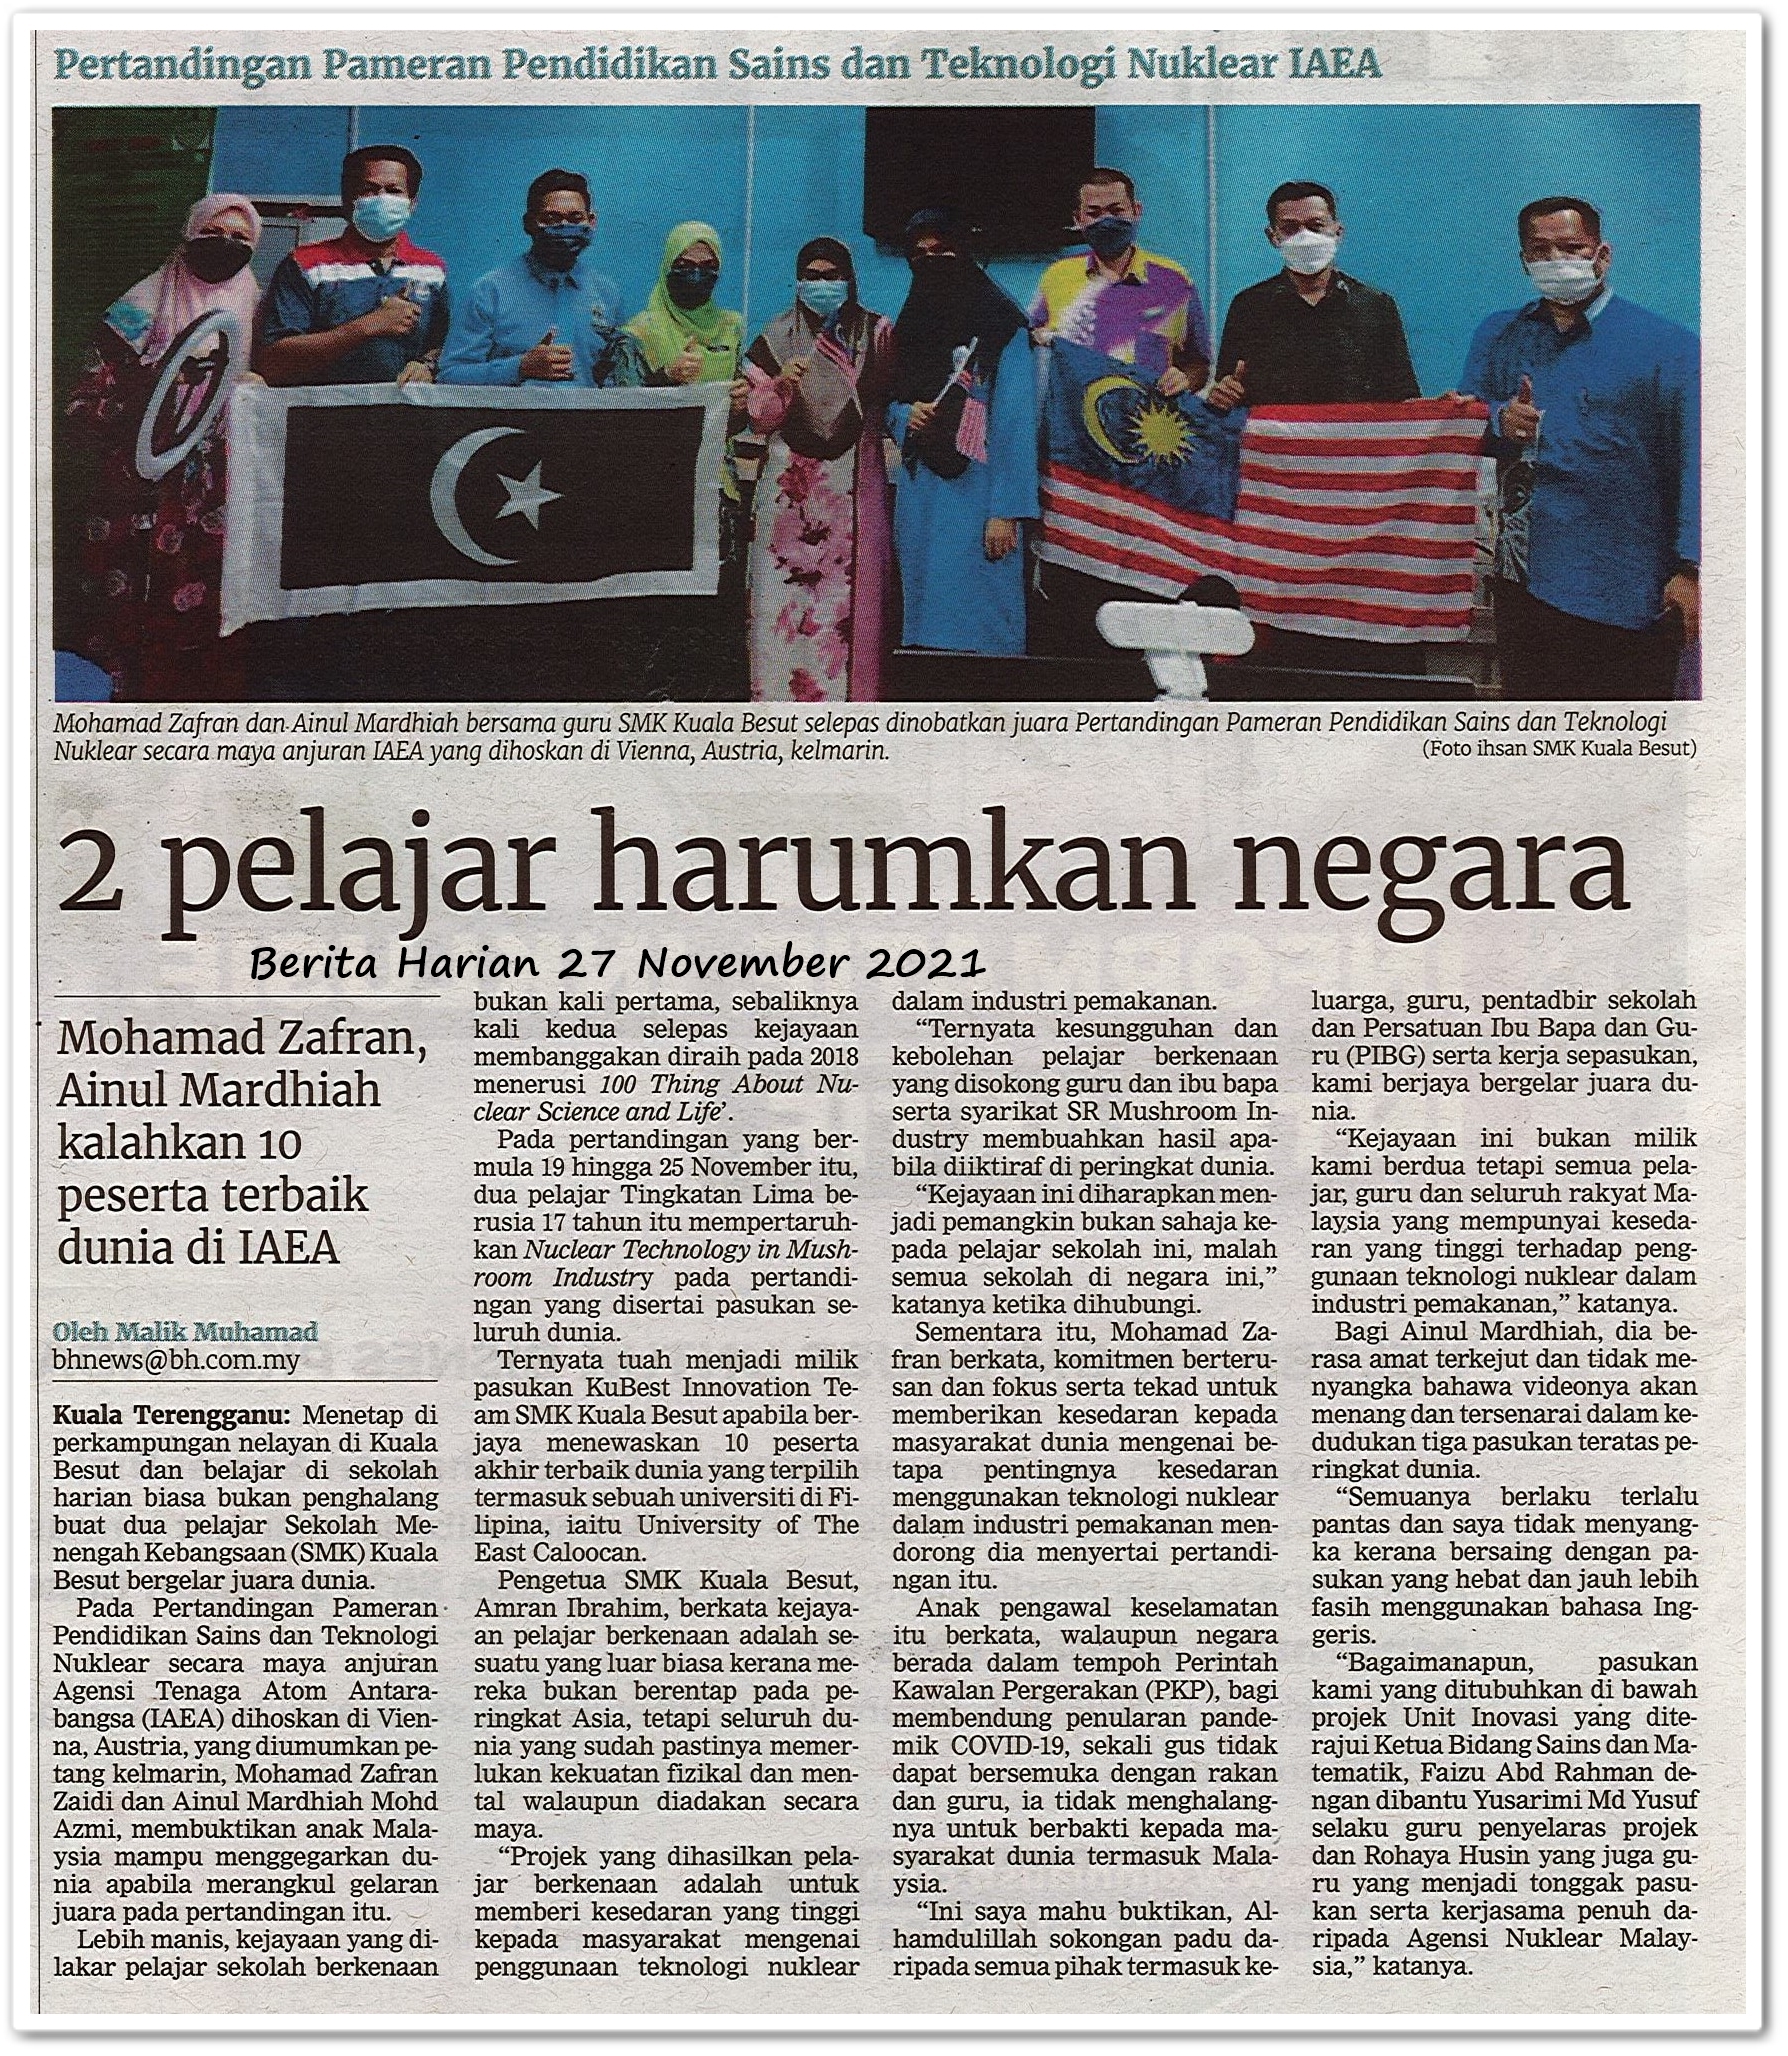 2 pelajar harumkan negara - Keratan akhbar Berita Harian 27 November 2021